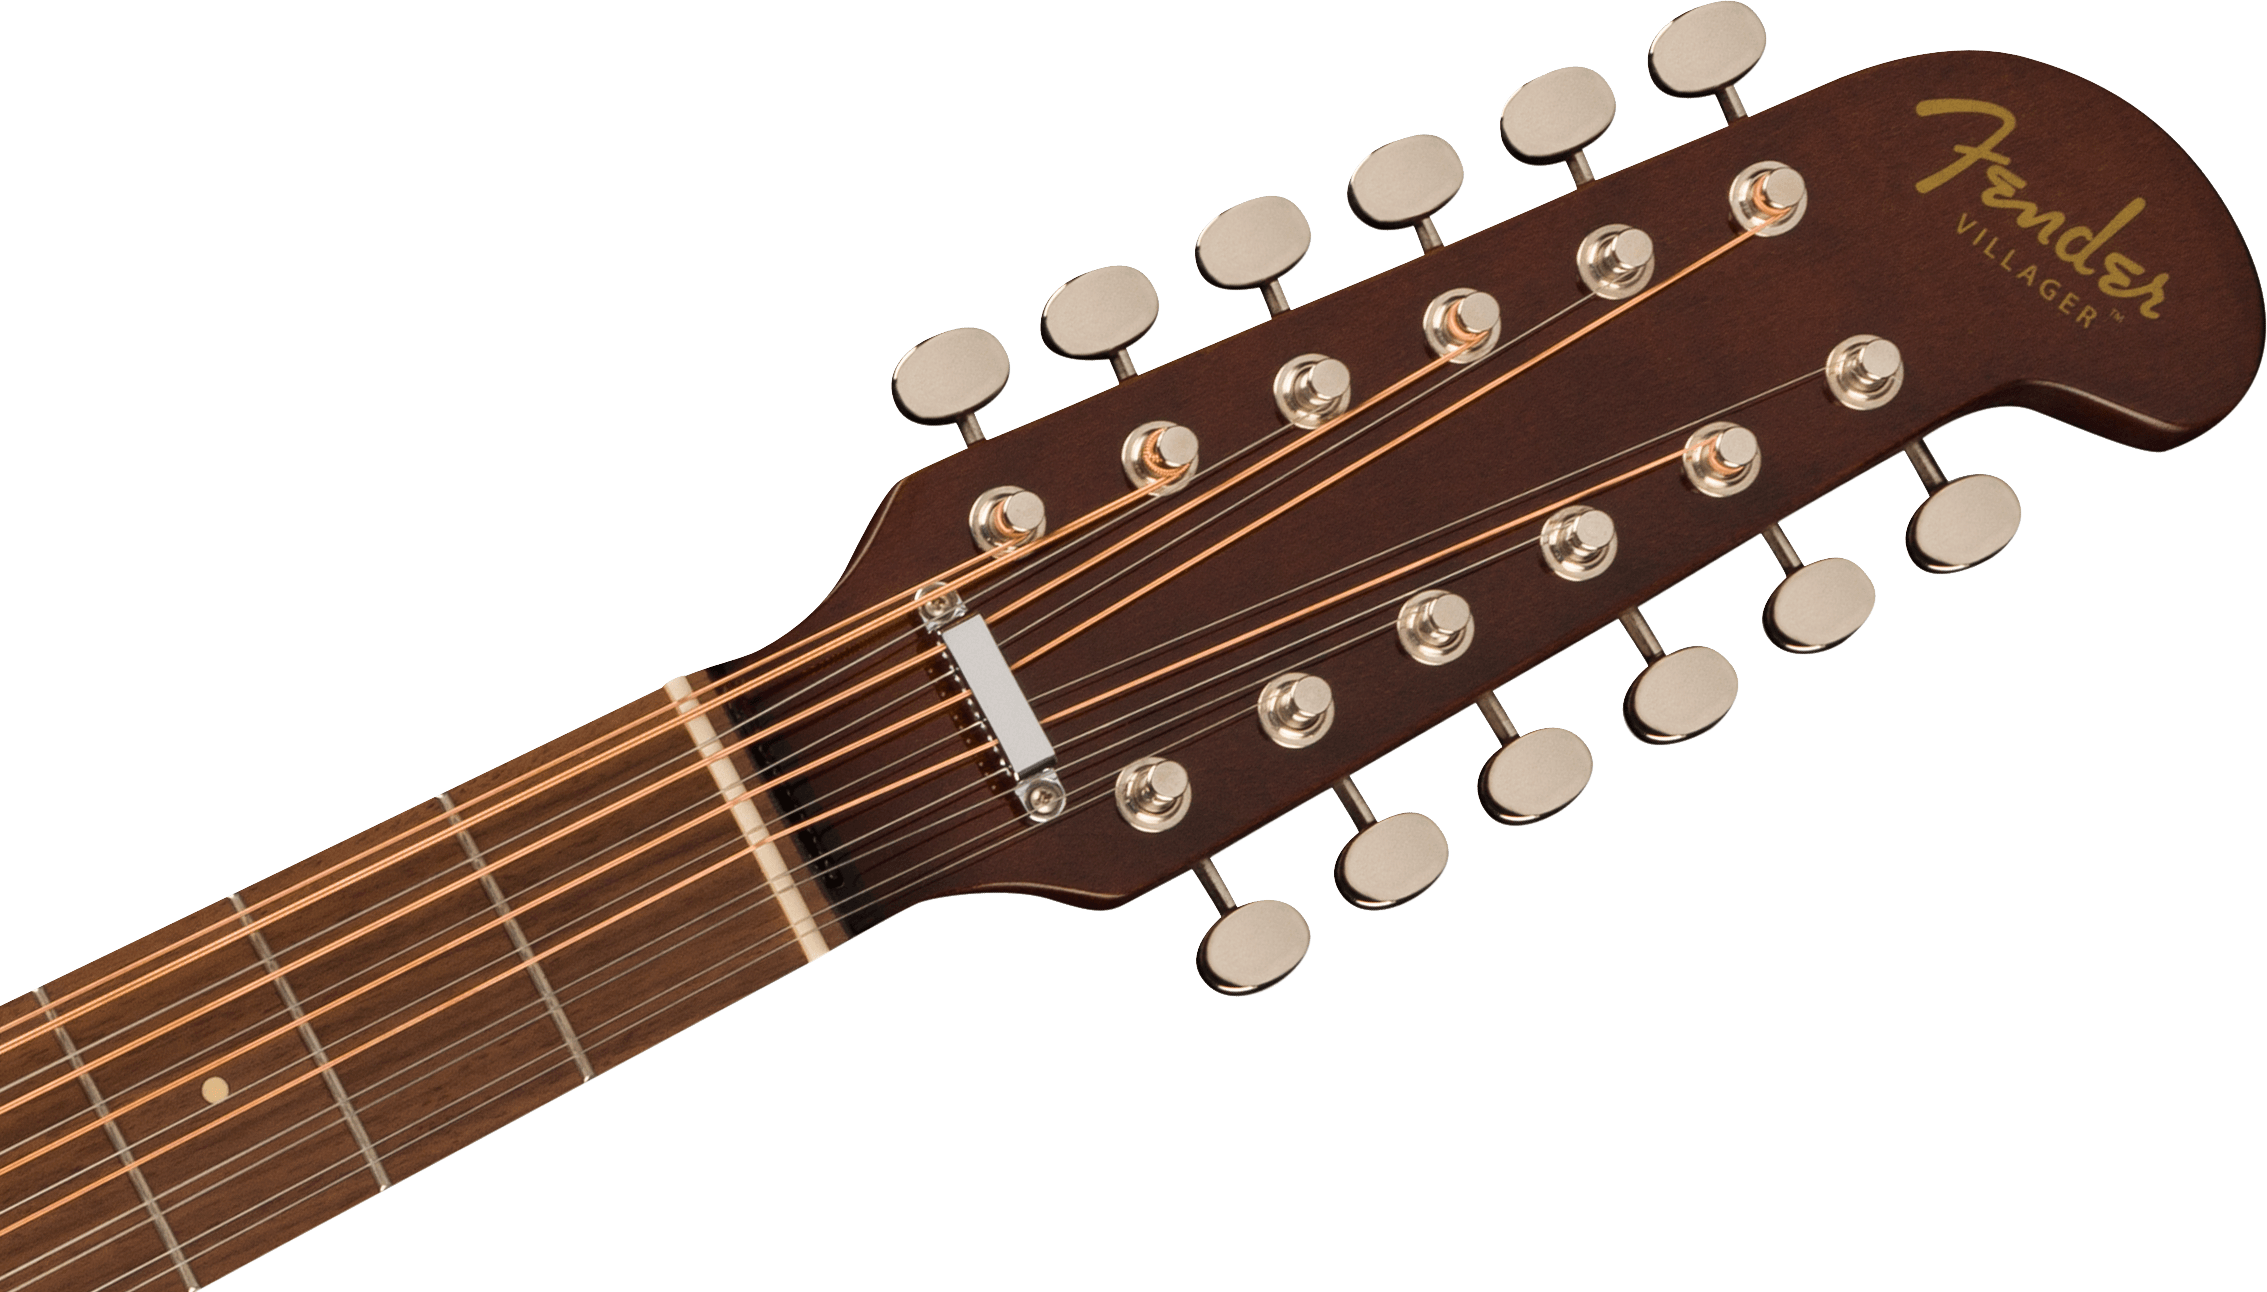 Fender Villager 12 De Epicea Sapelle Wal - Natural - Elektroakustische Gitarre - Variation 3